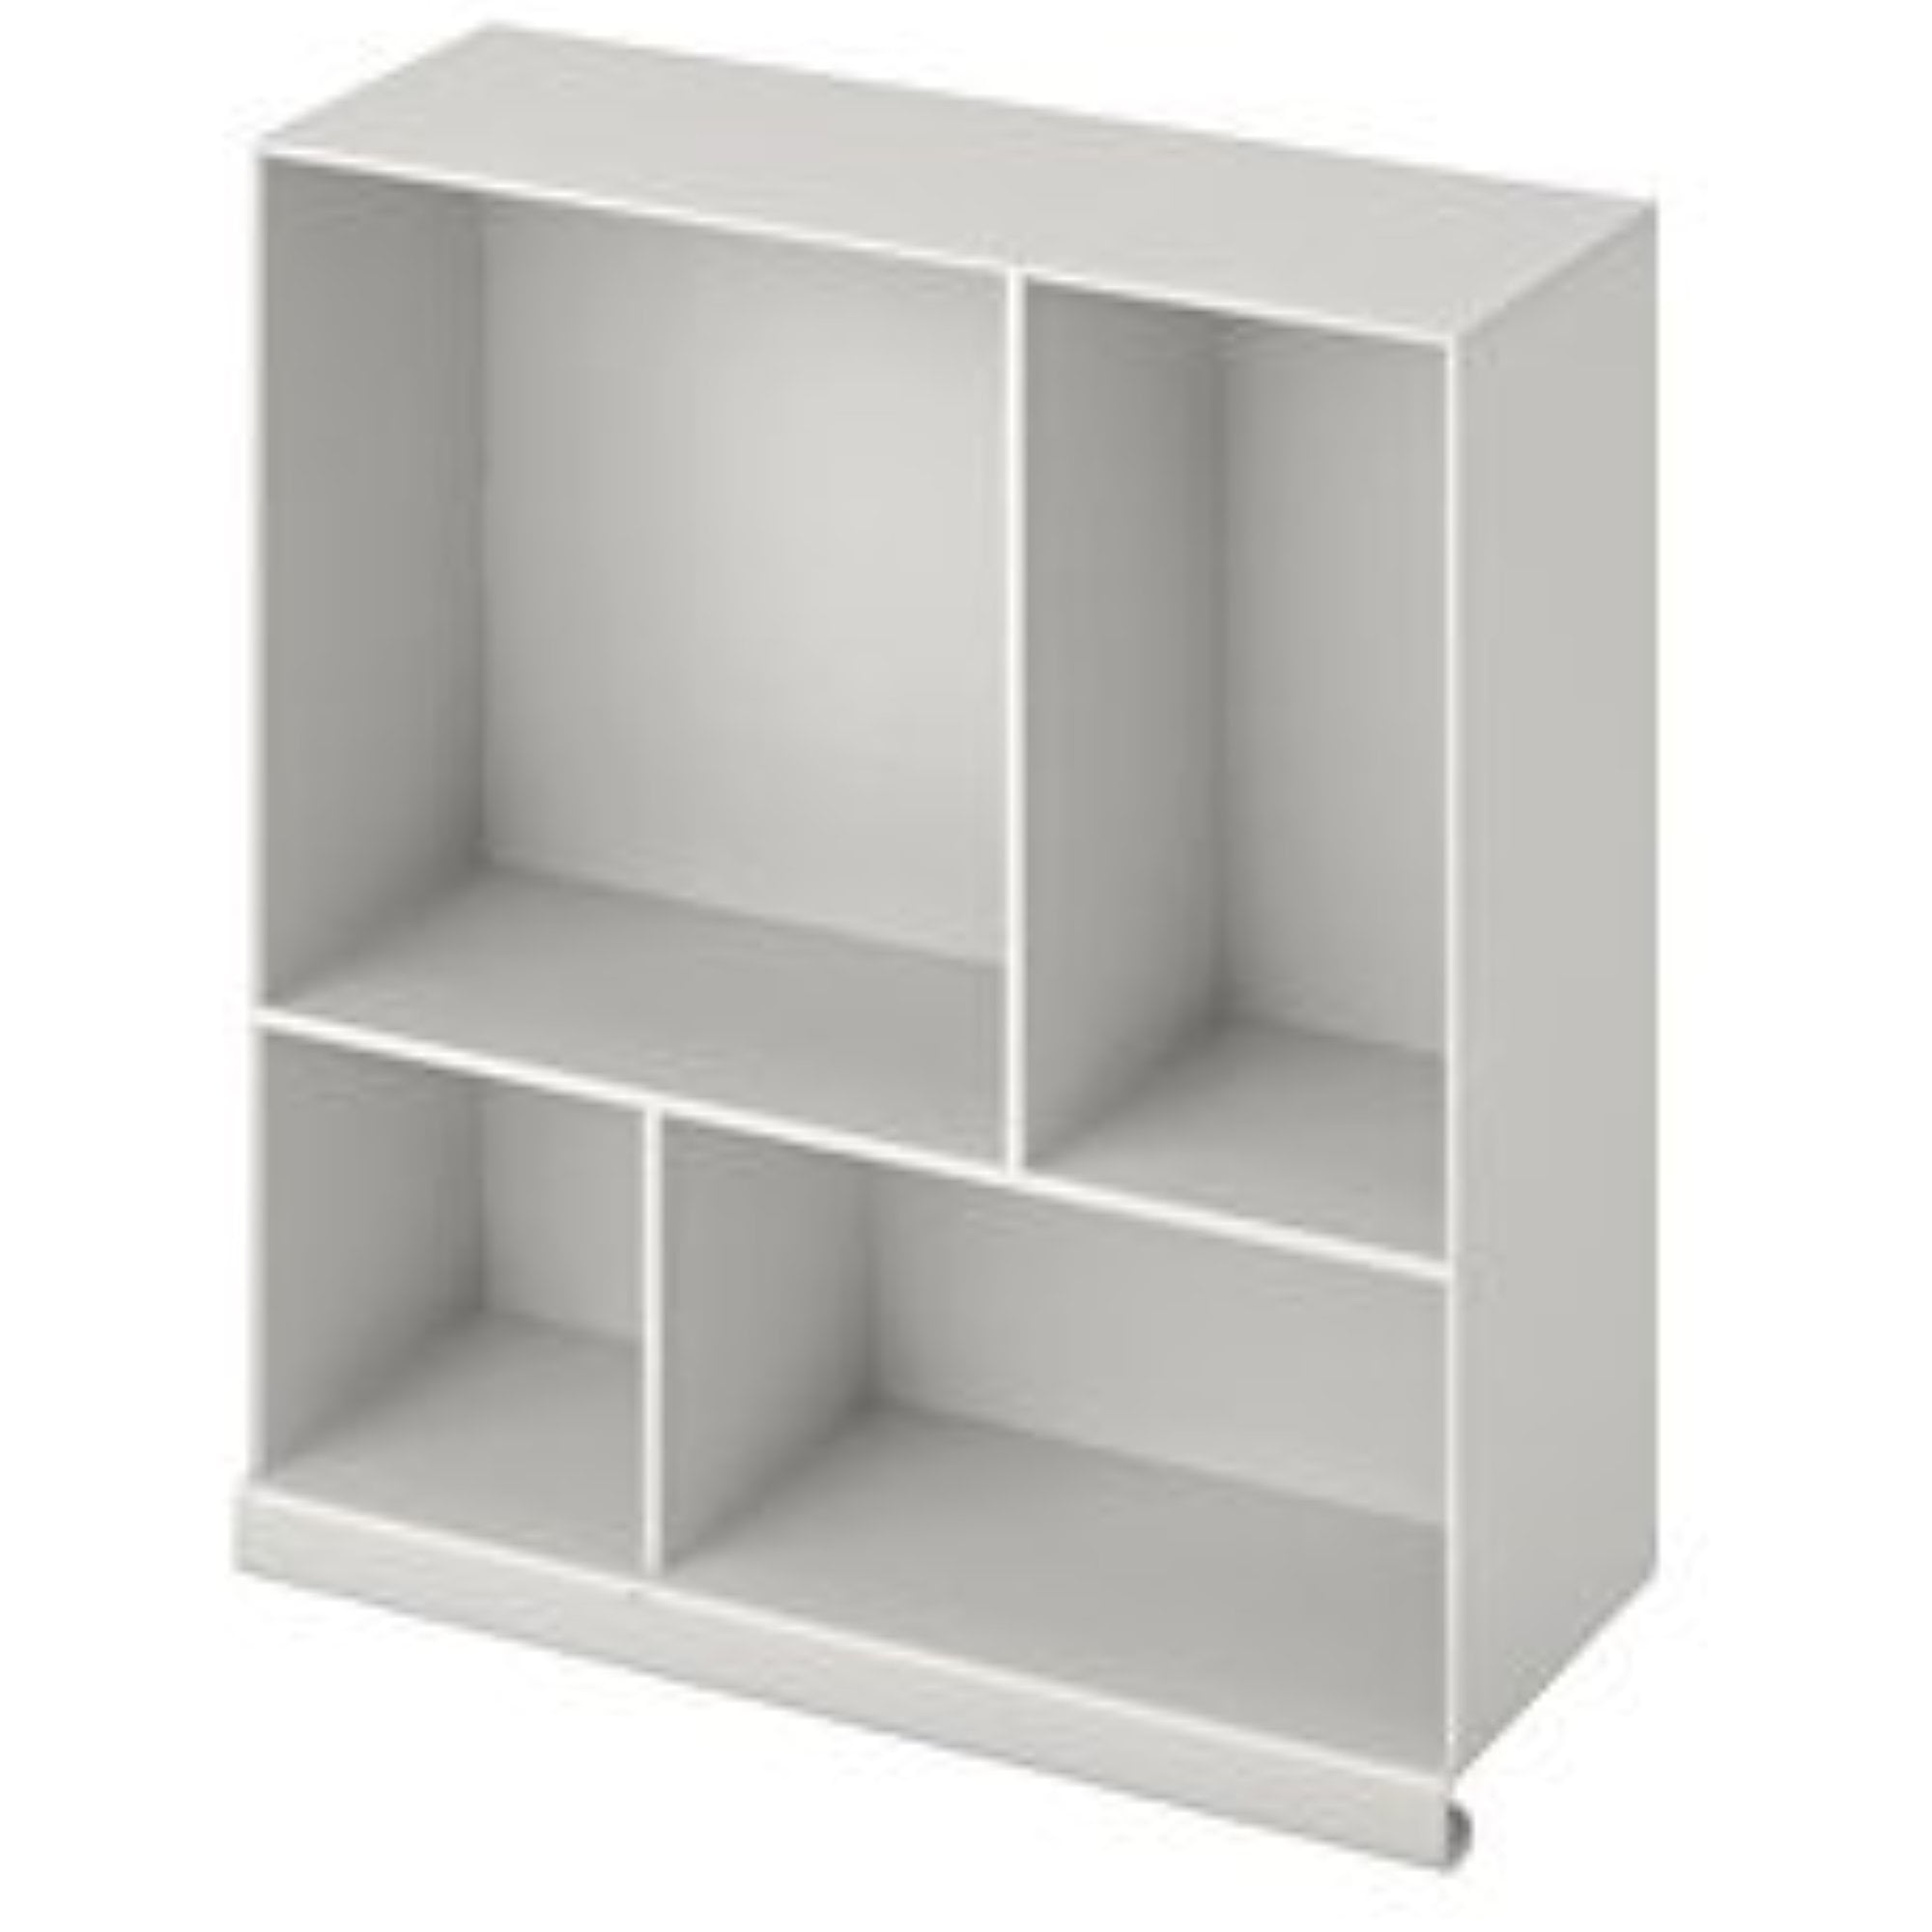 light gray IKEA KALLAX Shelf insert 